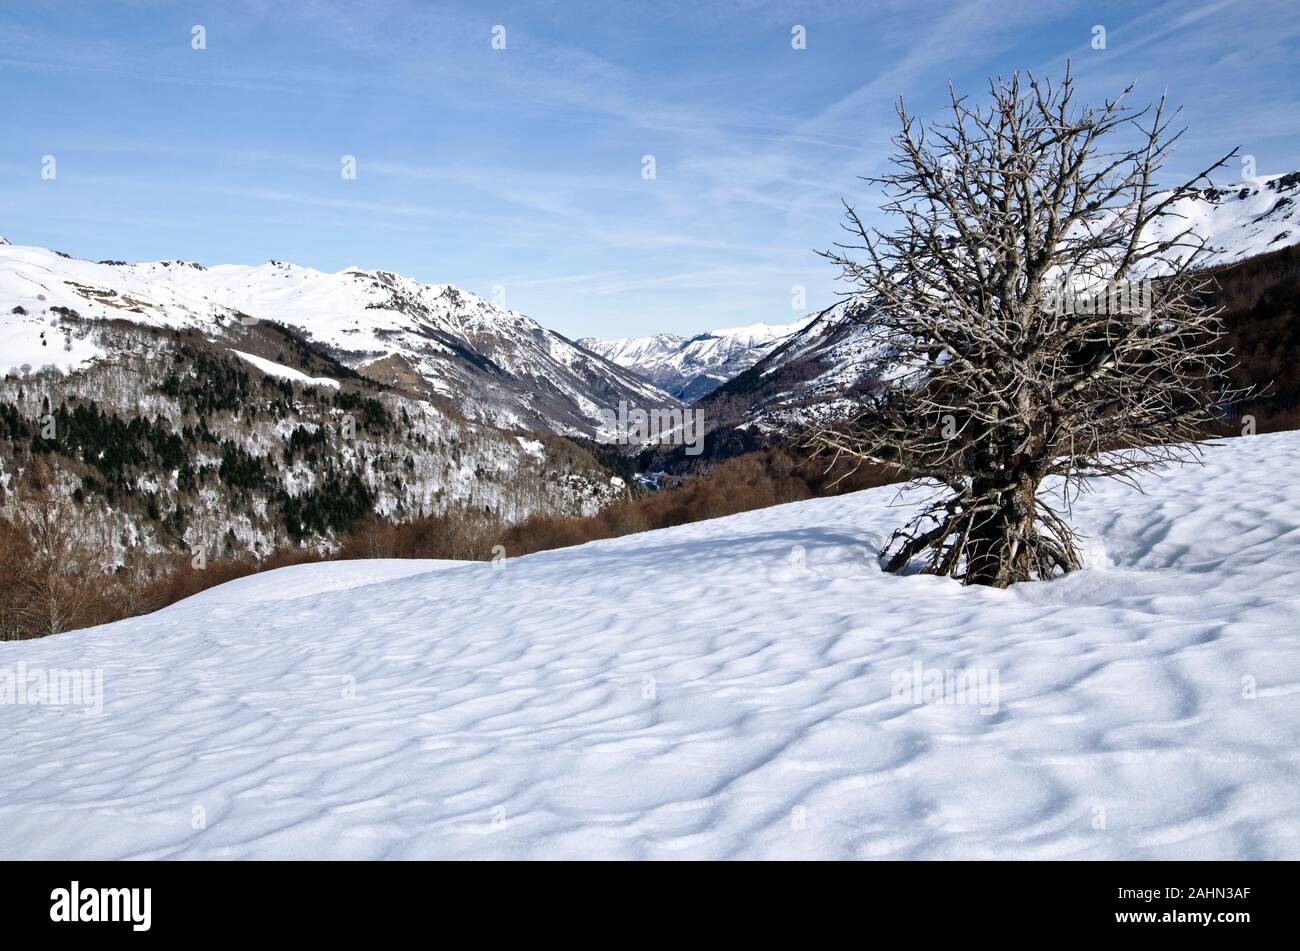 Aspe-tal in französischen Atlantischen Pyrenäen im Winter vom Col Col de Somport gesehen. Der Schnee Muster und der Baum ist im Vordergrund Stockfoto